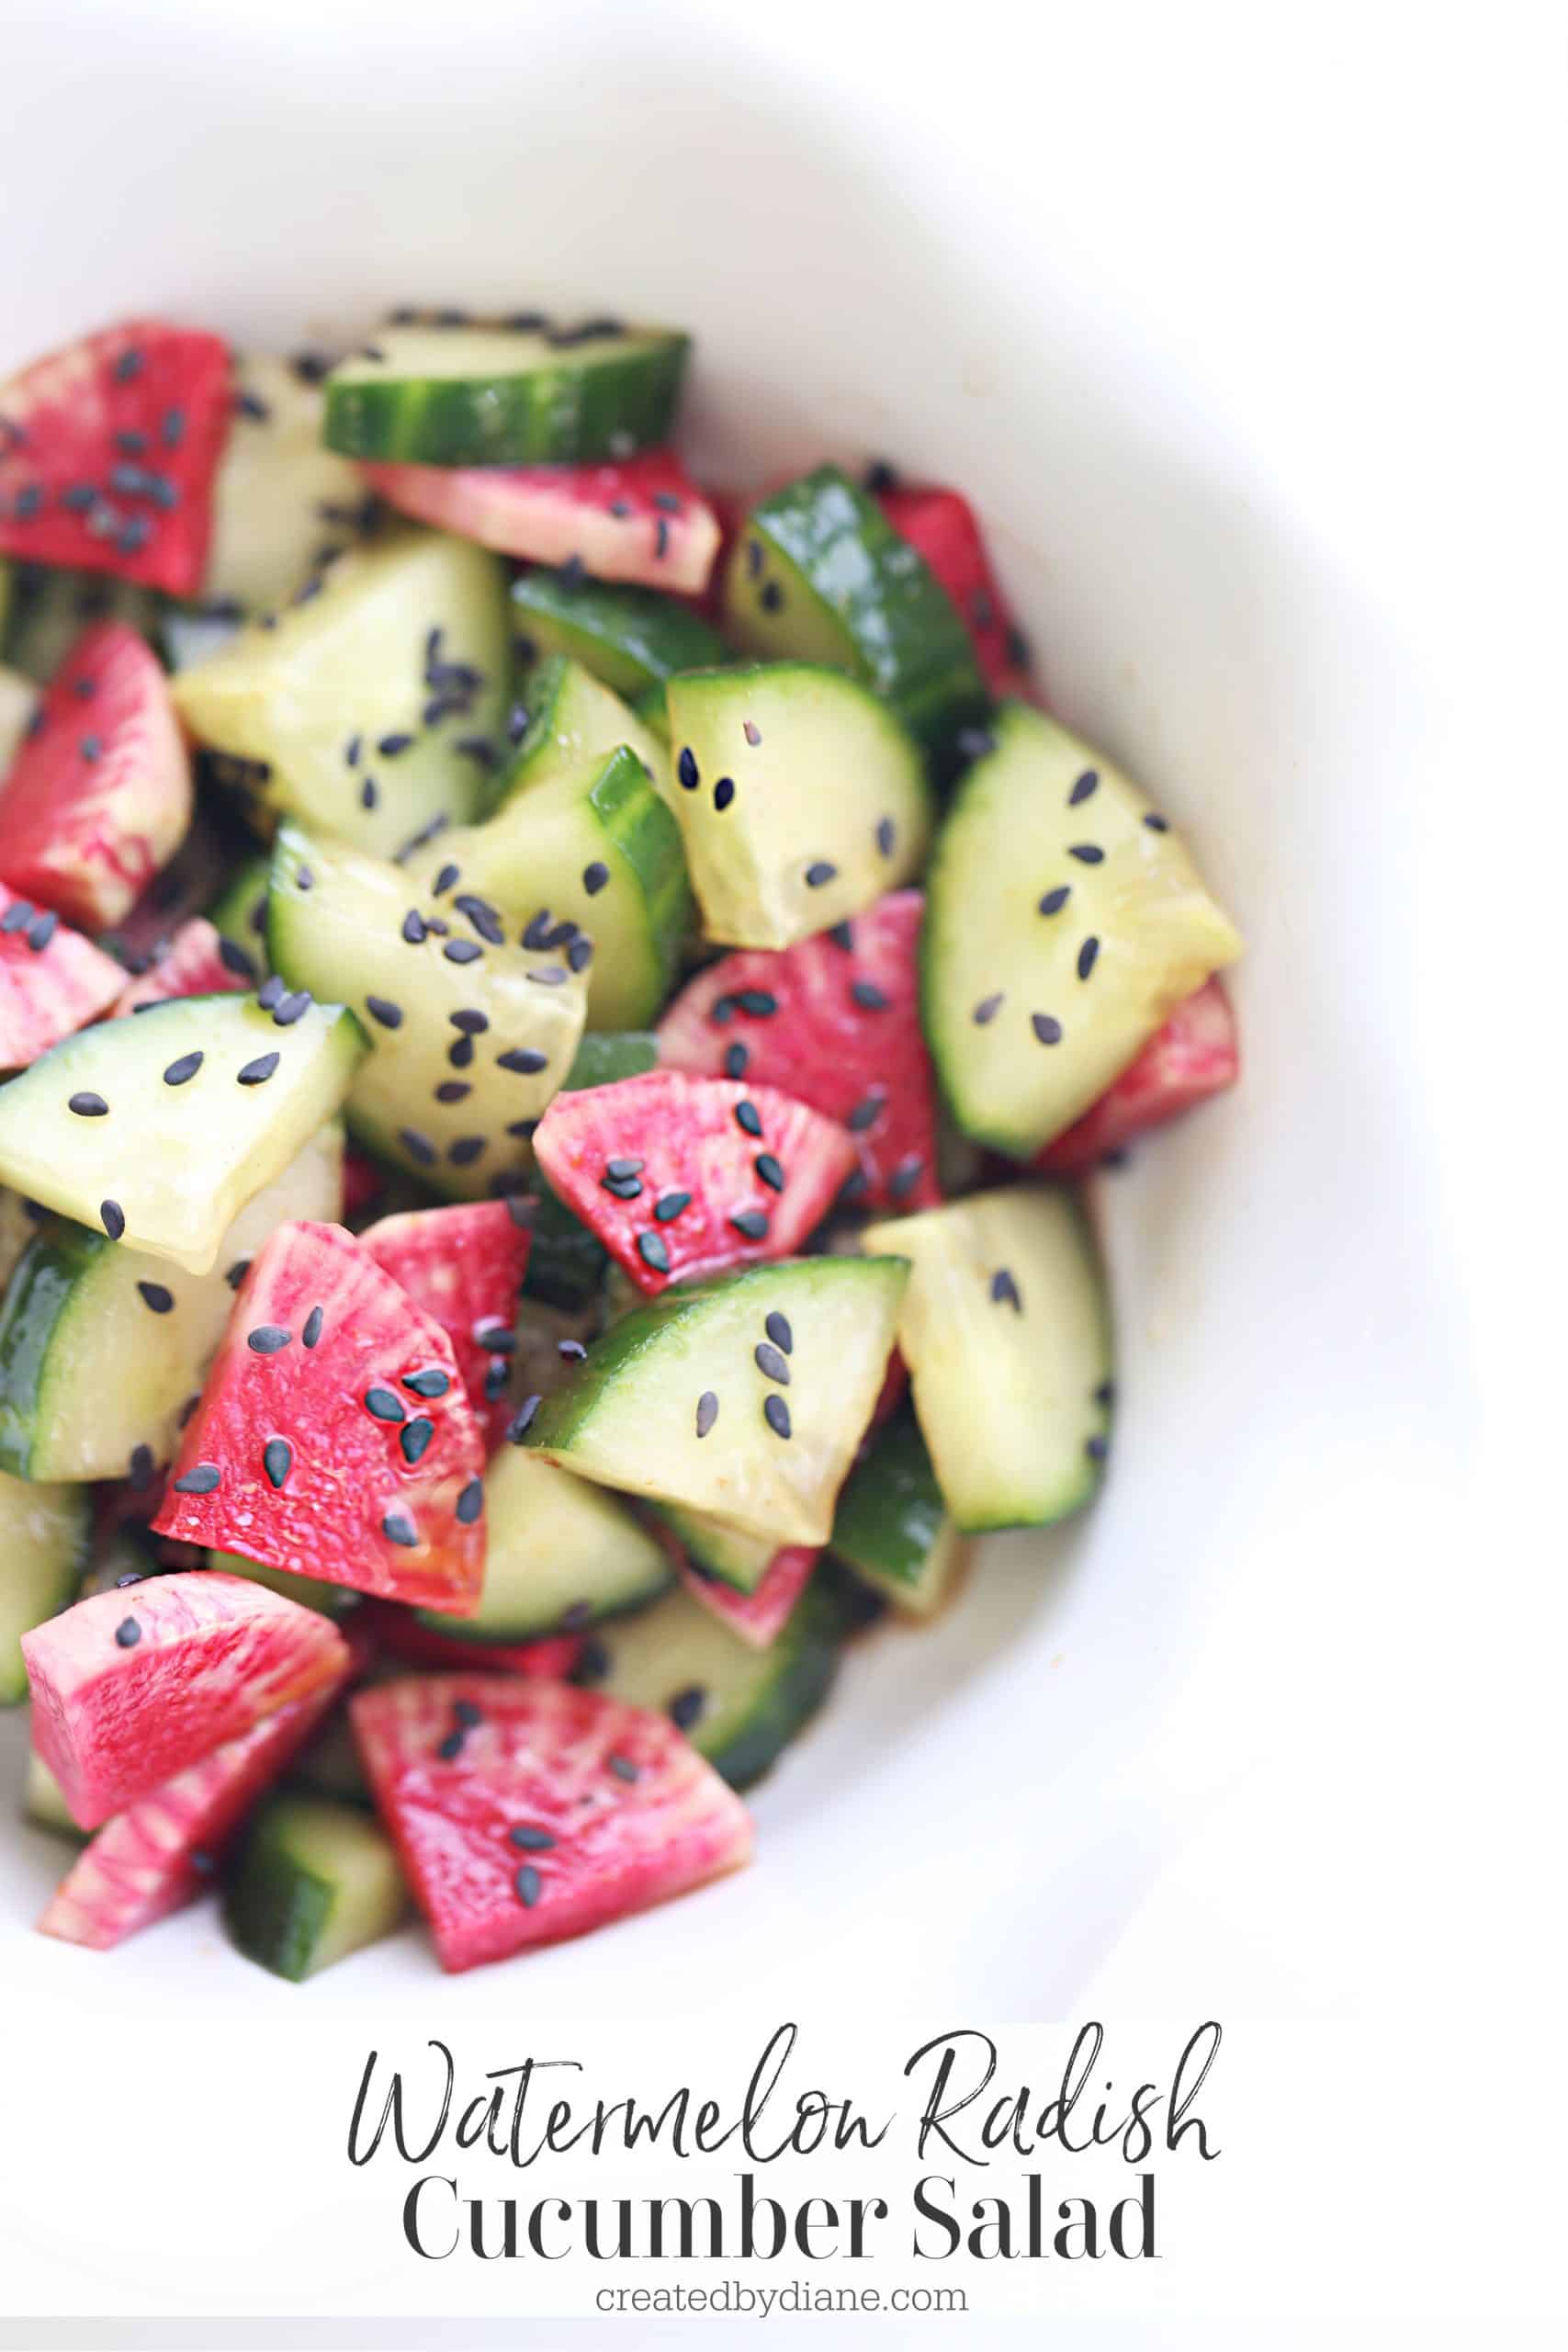 Watermelon Radish Cucumber Salad